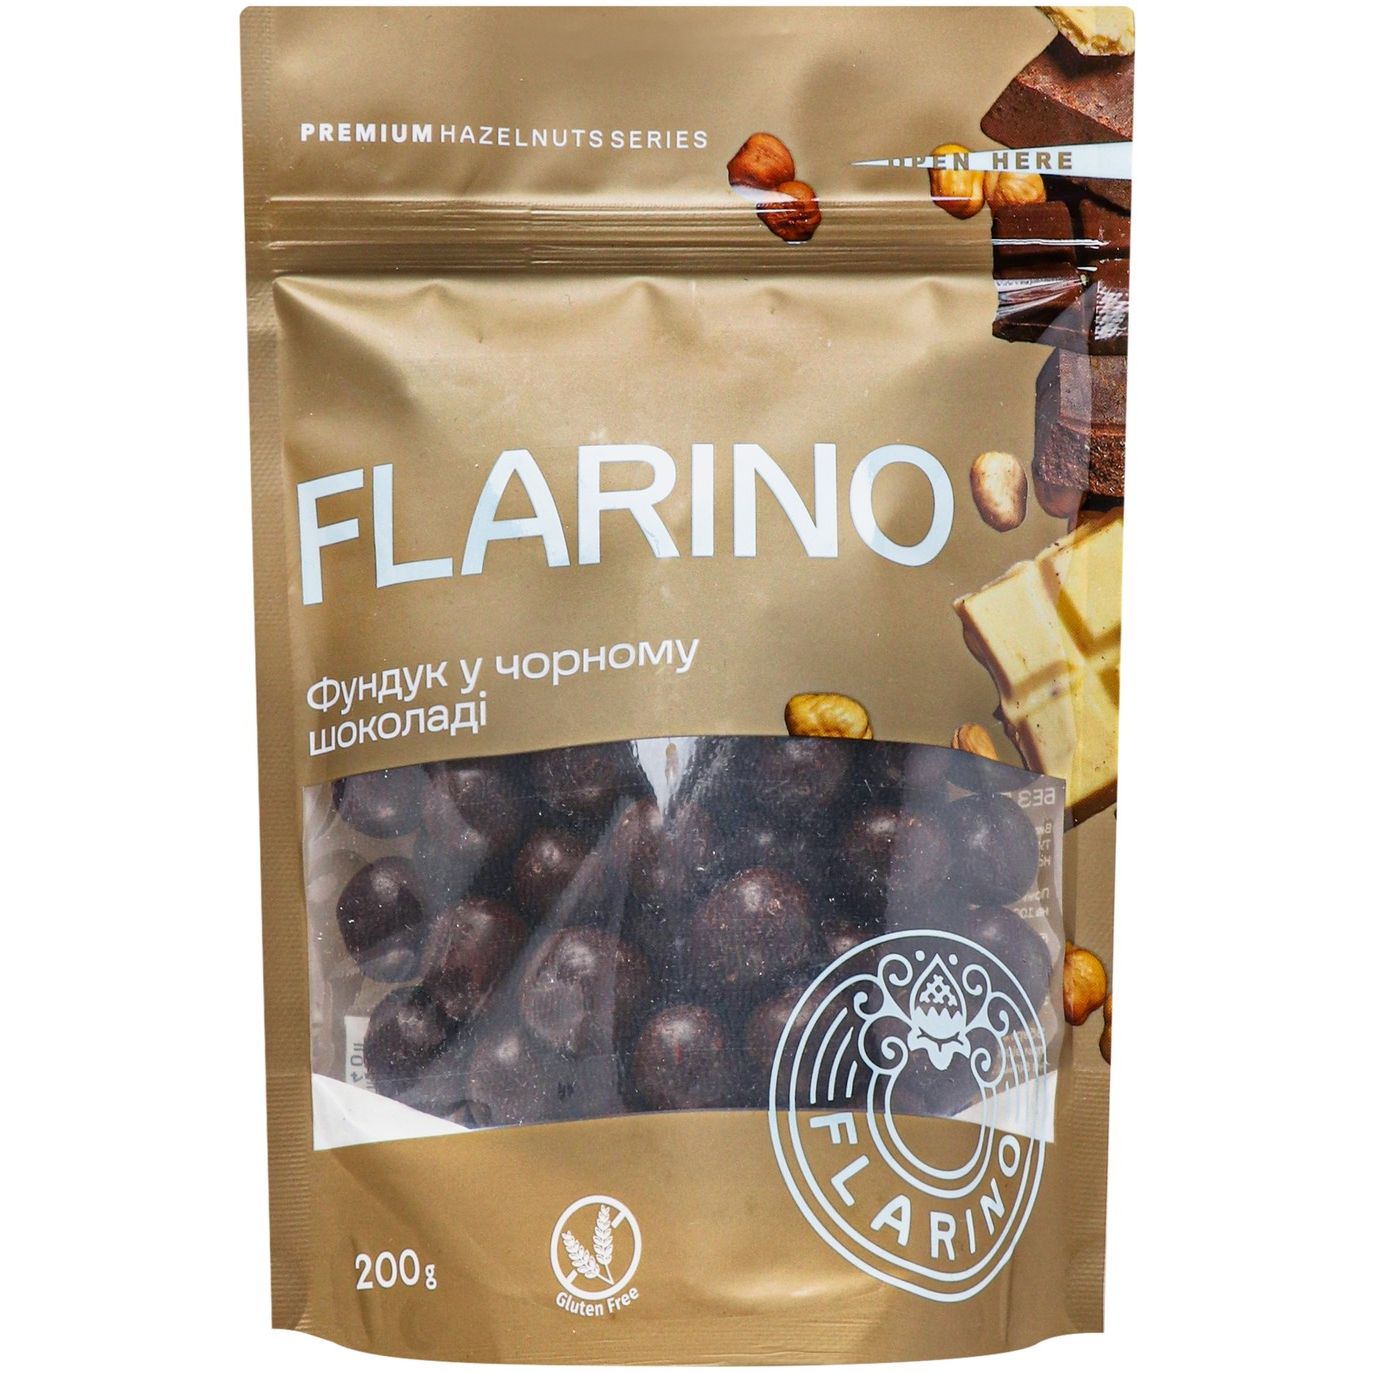 Фундук Flarino смажений у чорному шоколаді, 200 г (923101) - фото 1